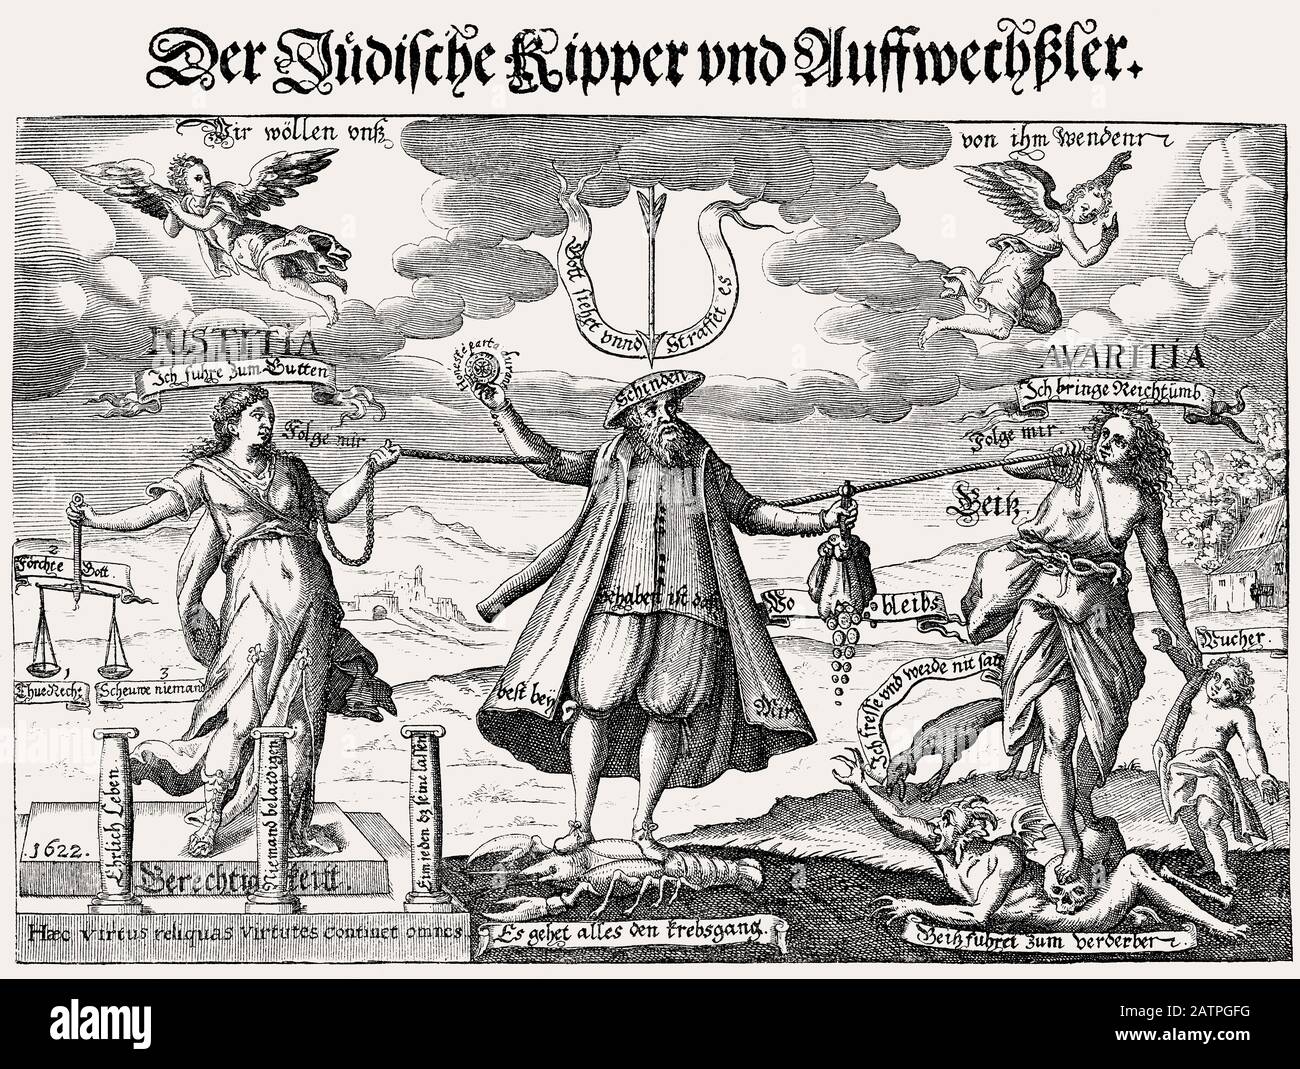 Progetto antisemitico sul cassone ribaltabile e Vedetta o Kipper und Wipper, fusione finanziaria tedesca del 1621-23 Foto Stock